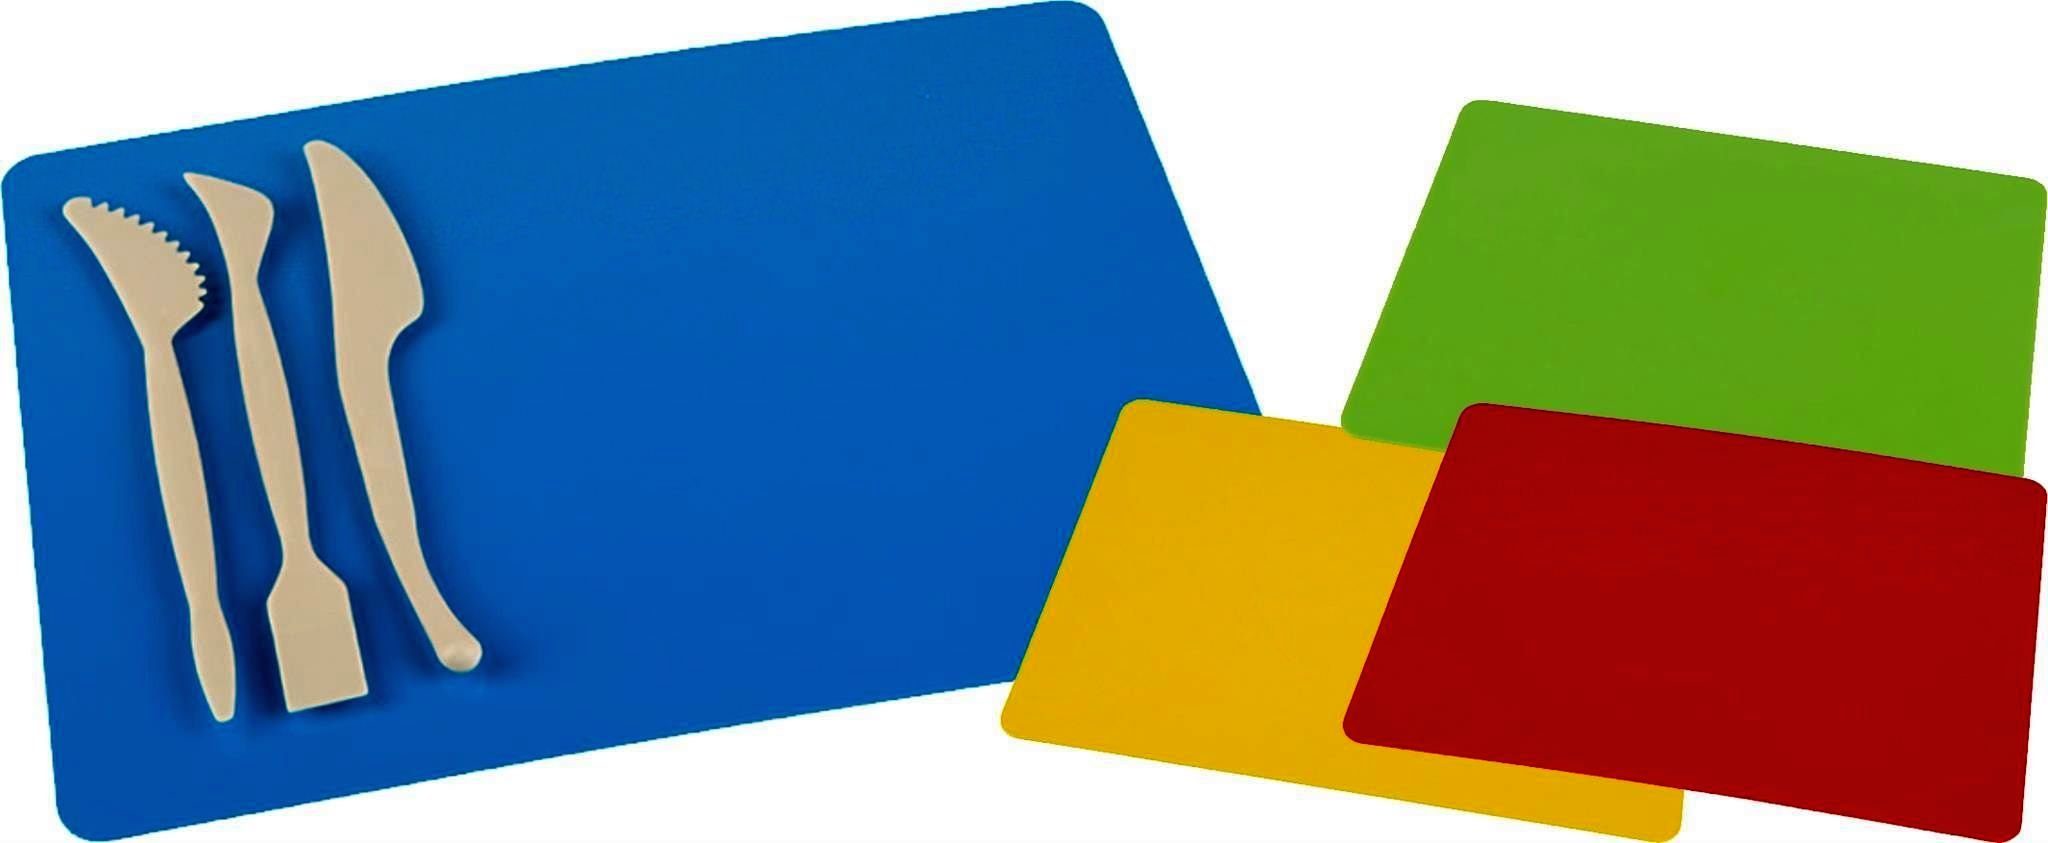 Bastelunterlage Farbe: Bastelkartonpapier Spachtel-Set gelb 3-teiligen A4 mit